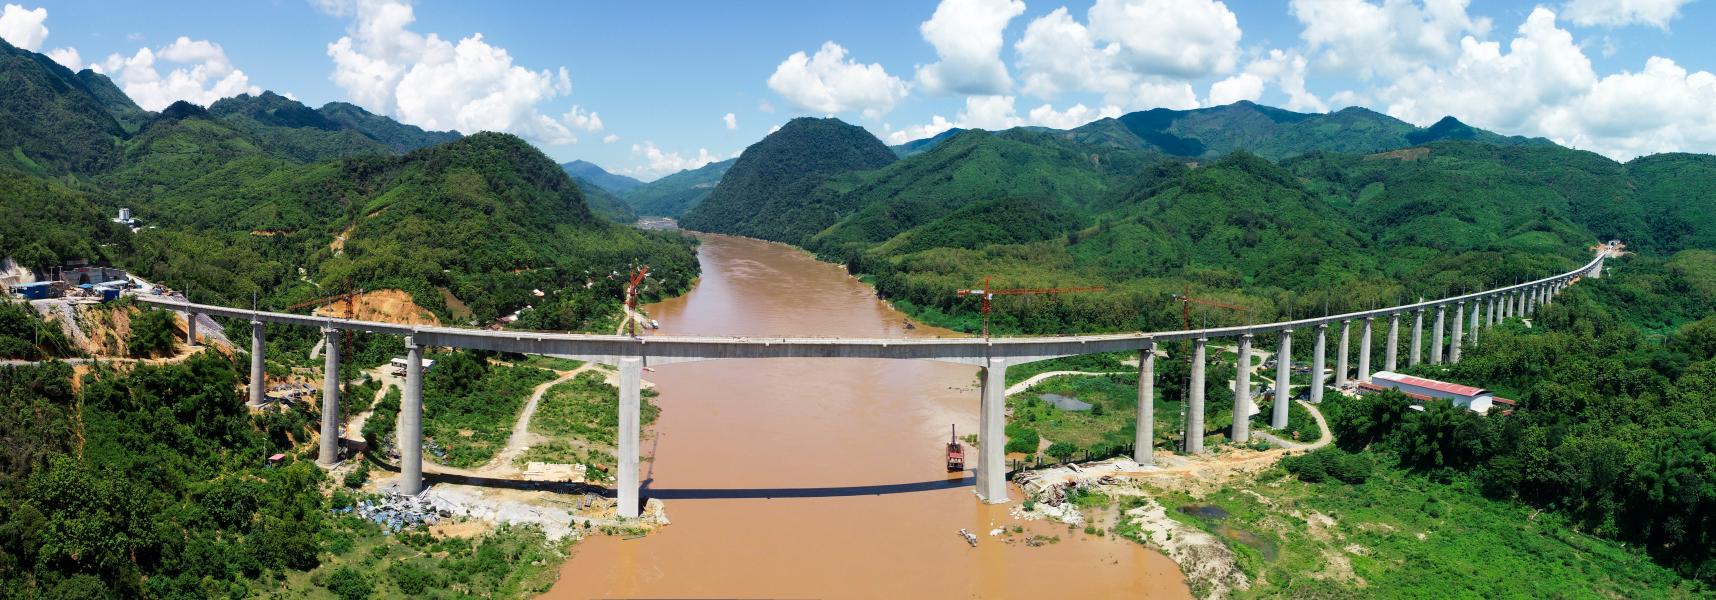 мост вдоль реки в китае